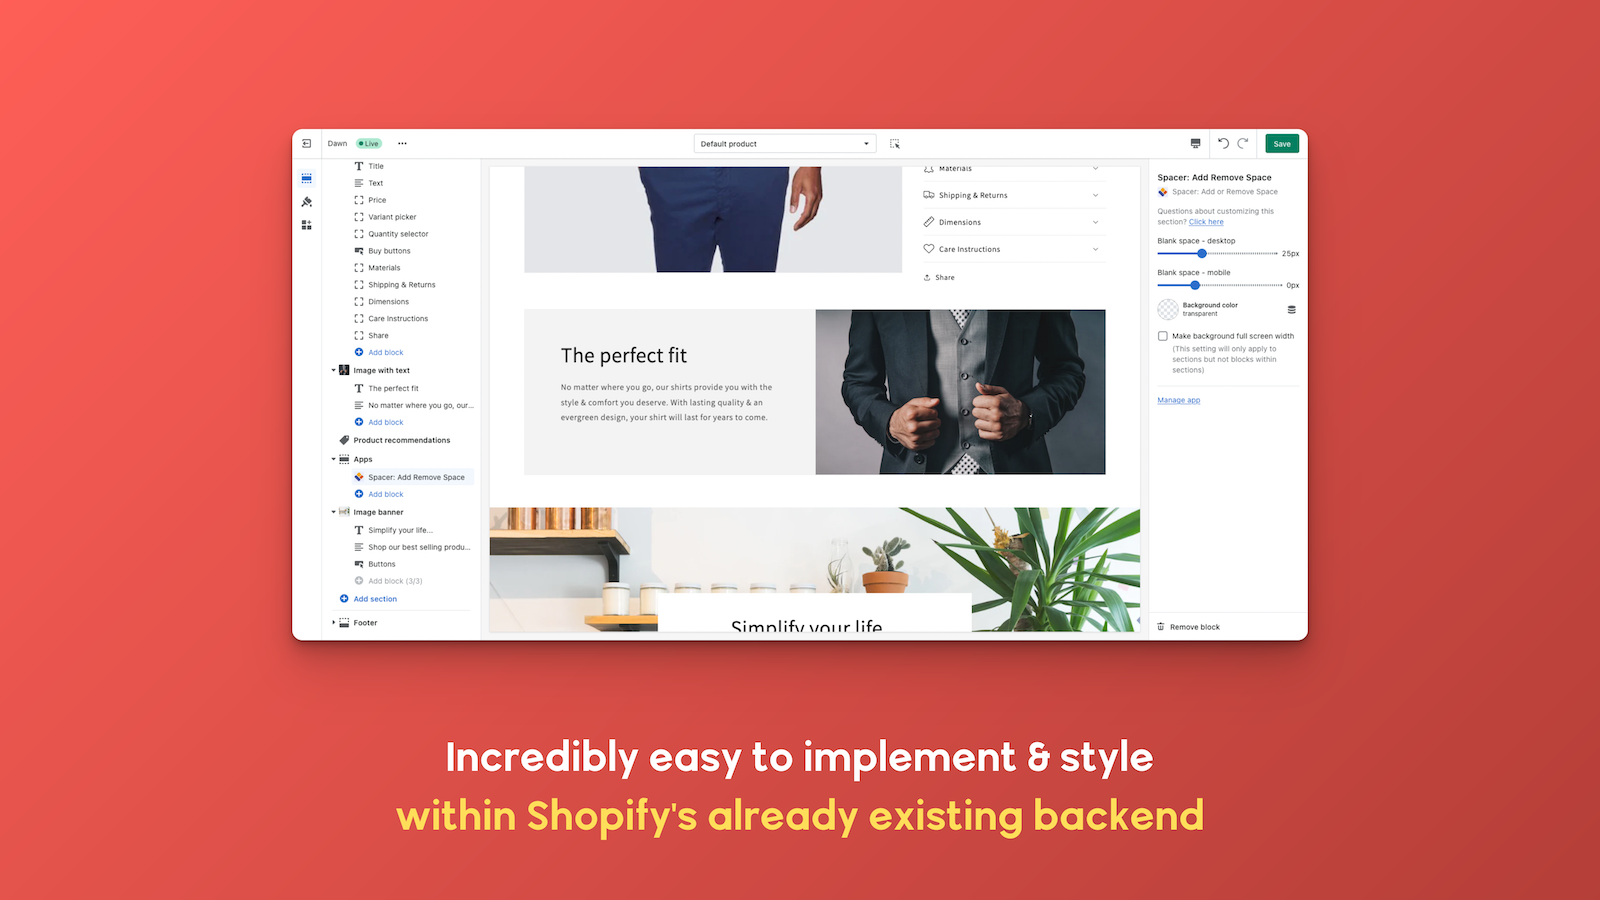 Utrolig nem at implementere og style inden for Shopify's backend